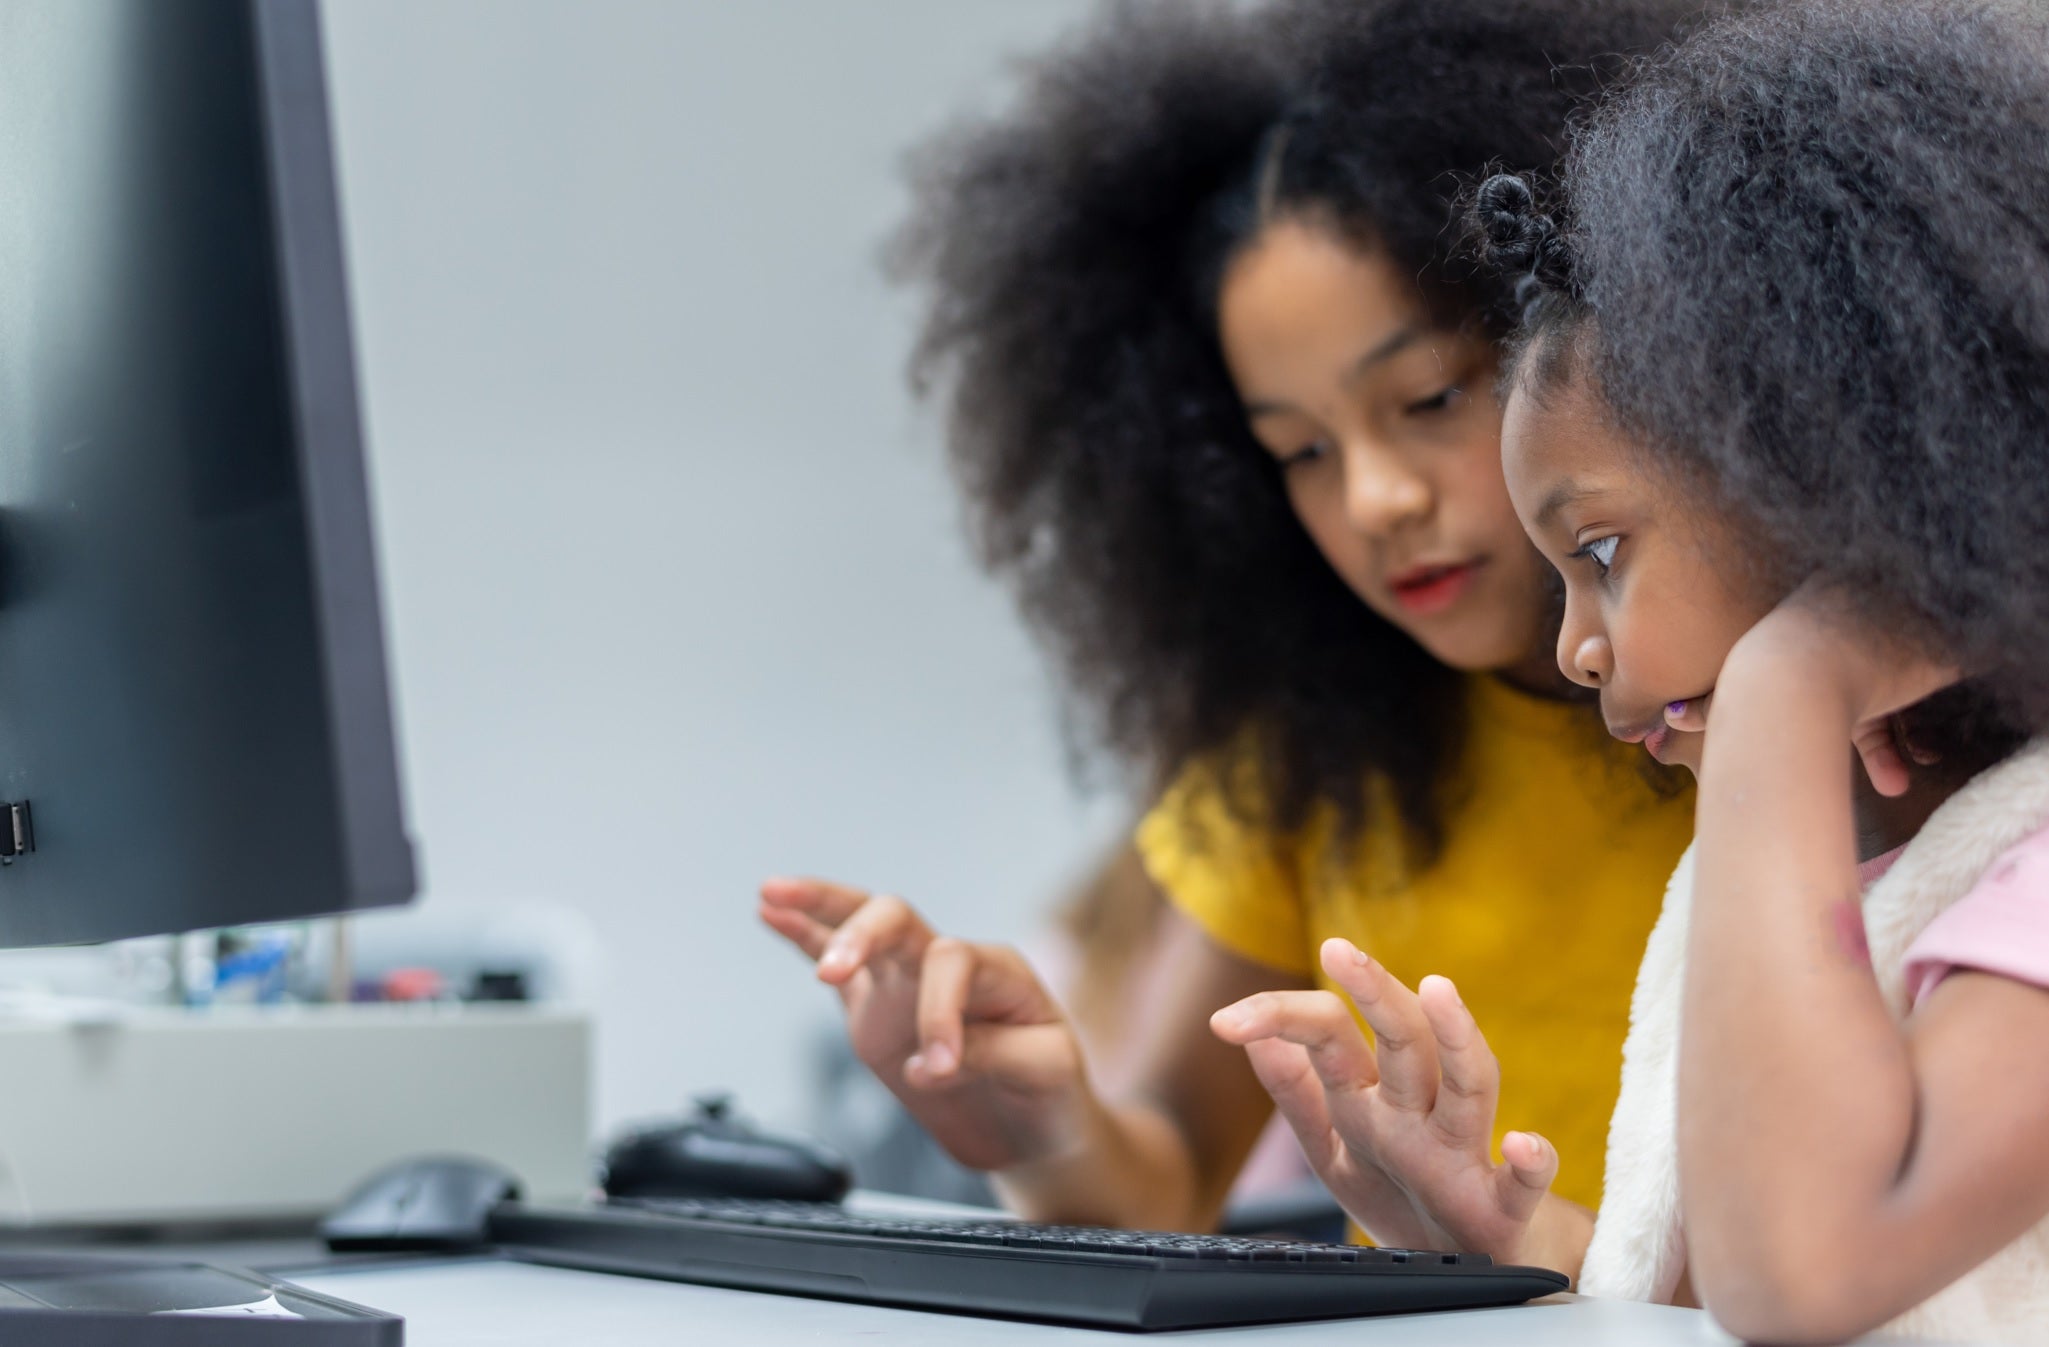 Dos niñas estudian en una computadora